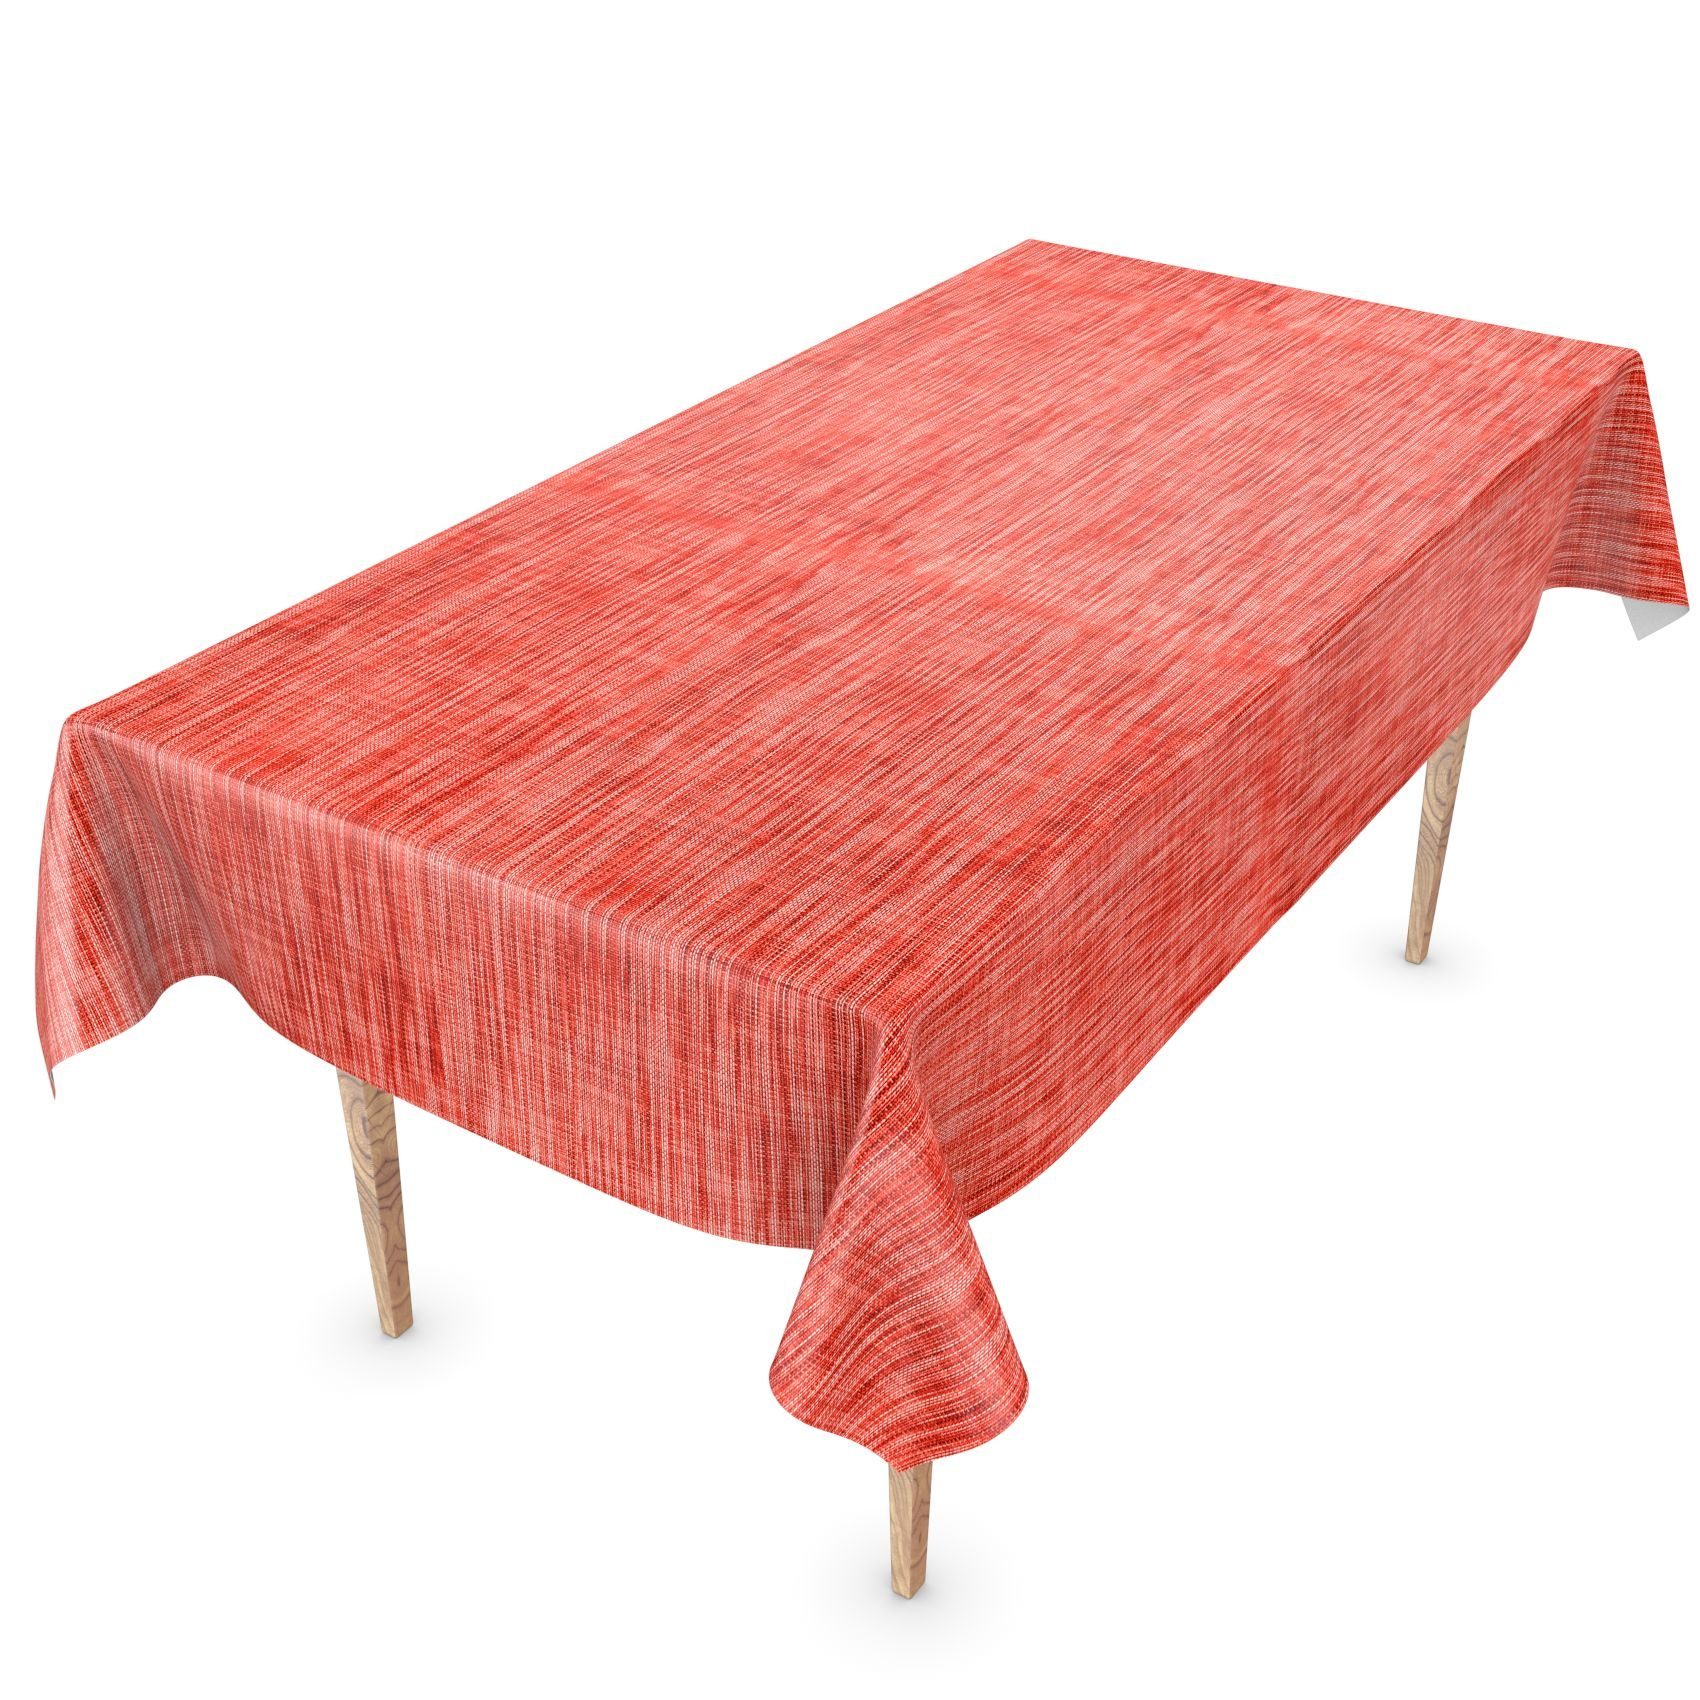 ANRO Tischdecke Tischdecke Wachstuch Einfarbig 140, Breite Robust Rot Glatt Wasserabweisend